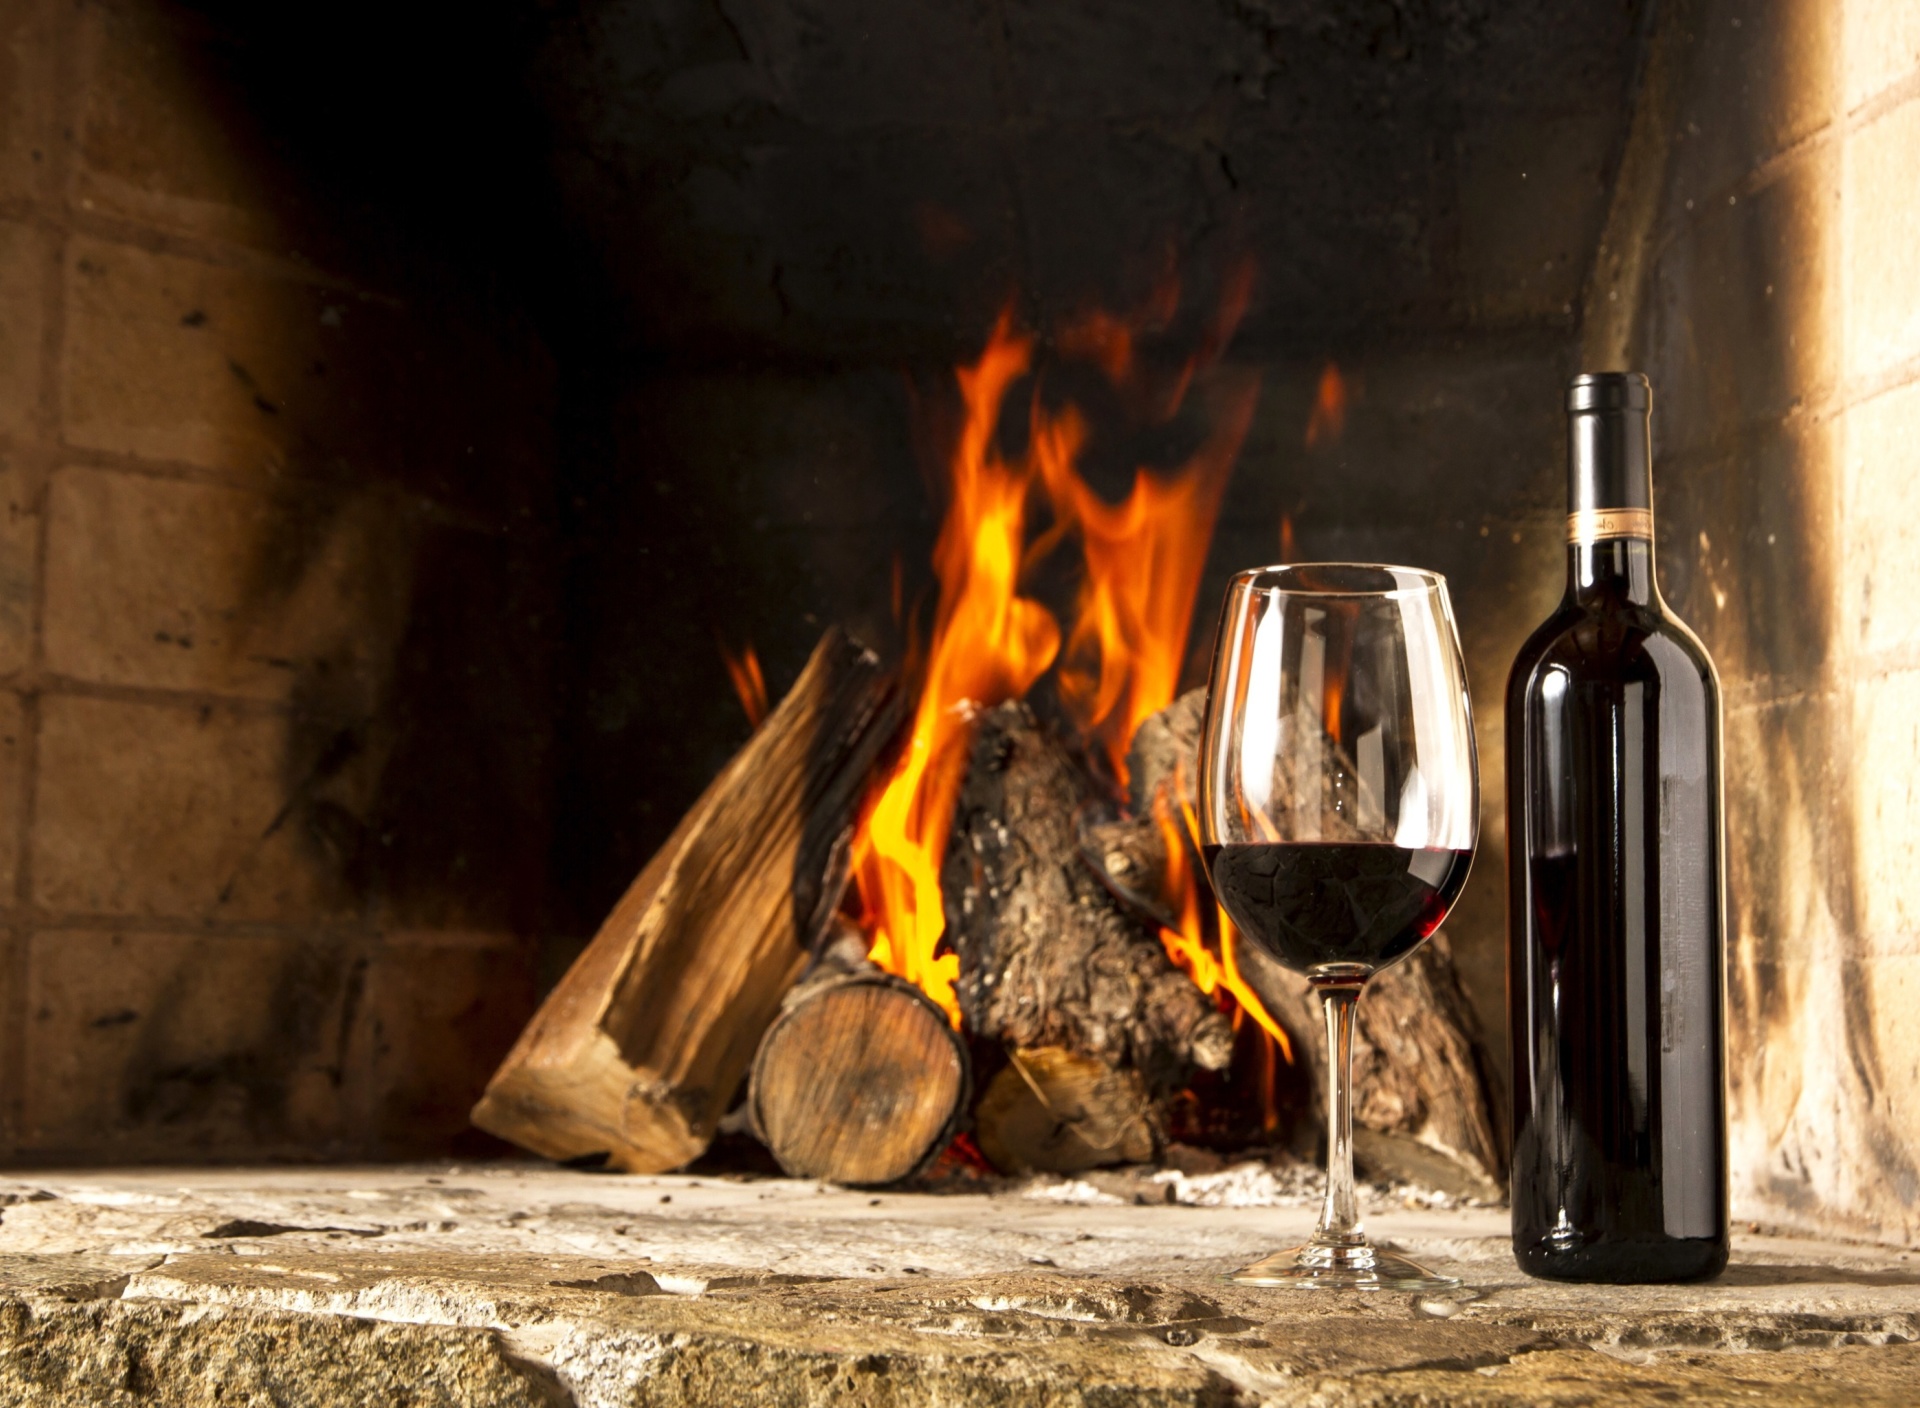 Обои Wine and fireplace 1920x1408